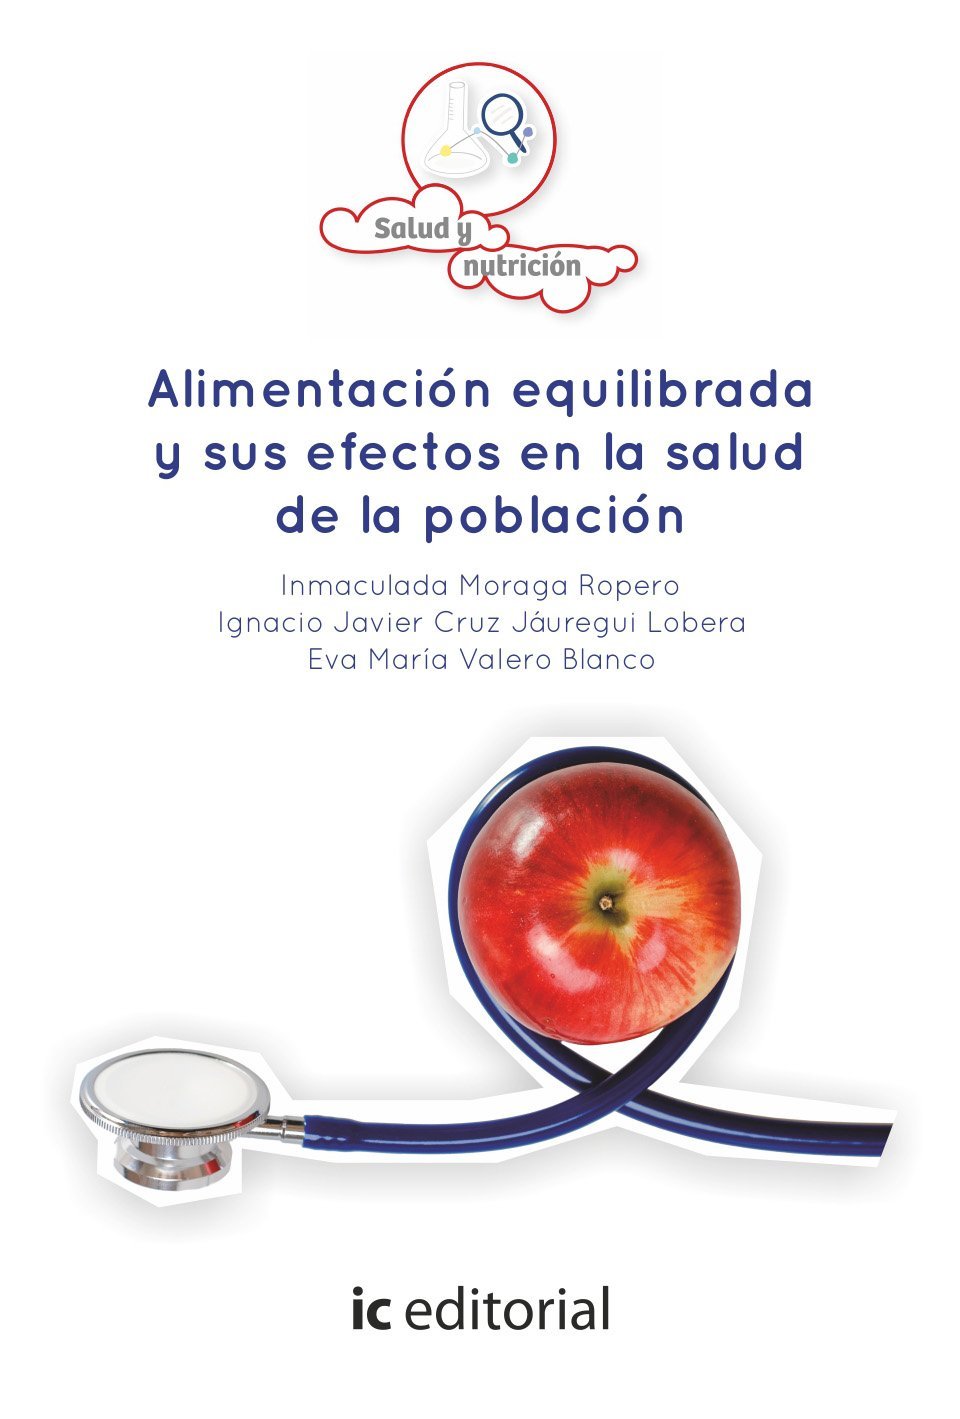 Imagen de portada del libro Alimentación equilibrada y sus efectos en la salud de la población